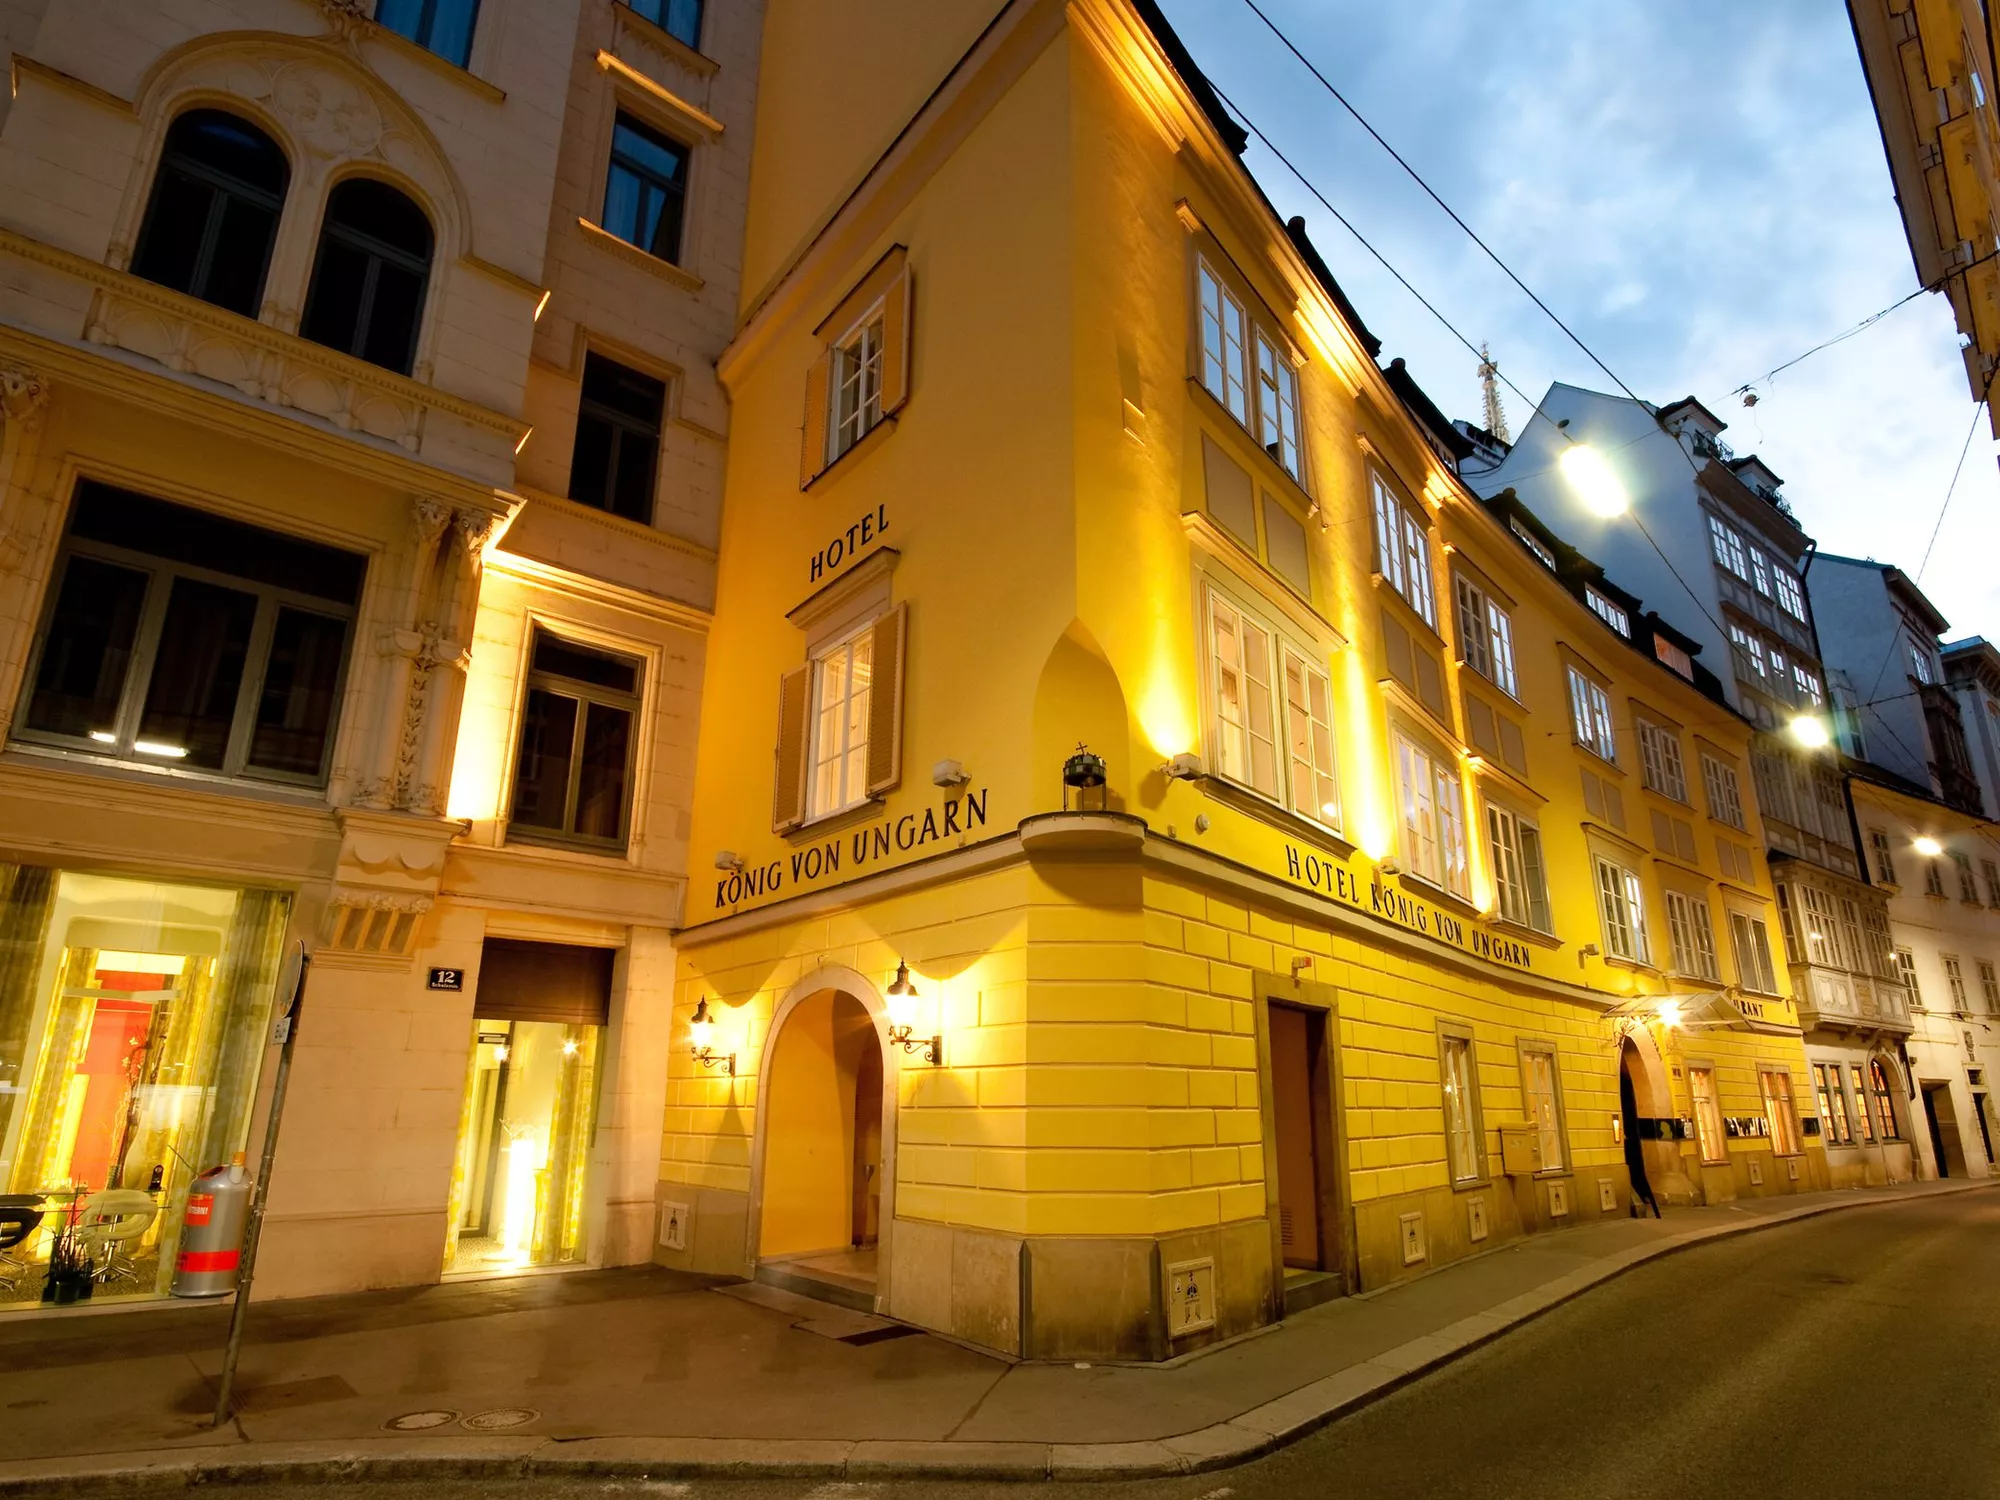 Exterior view of Hotel König von Ungarn in Vienna in the evening